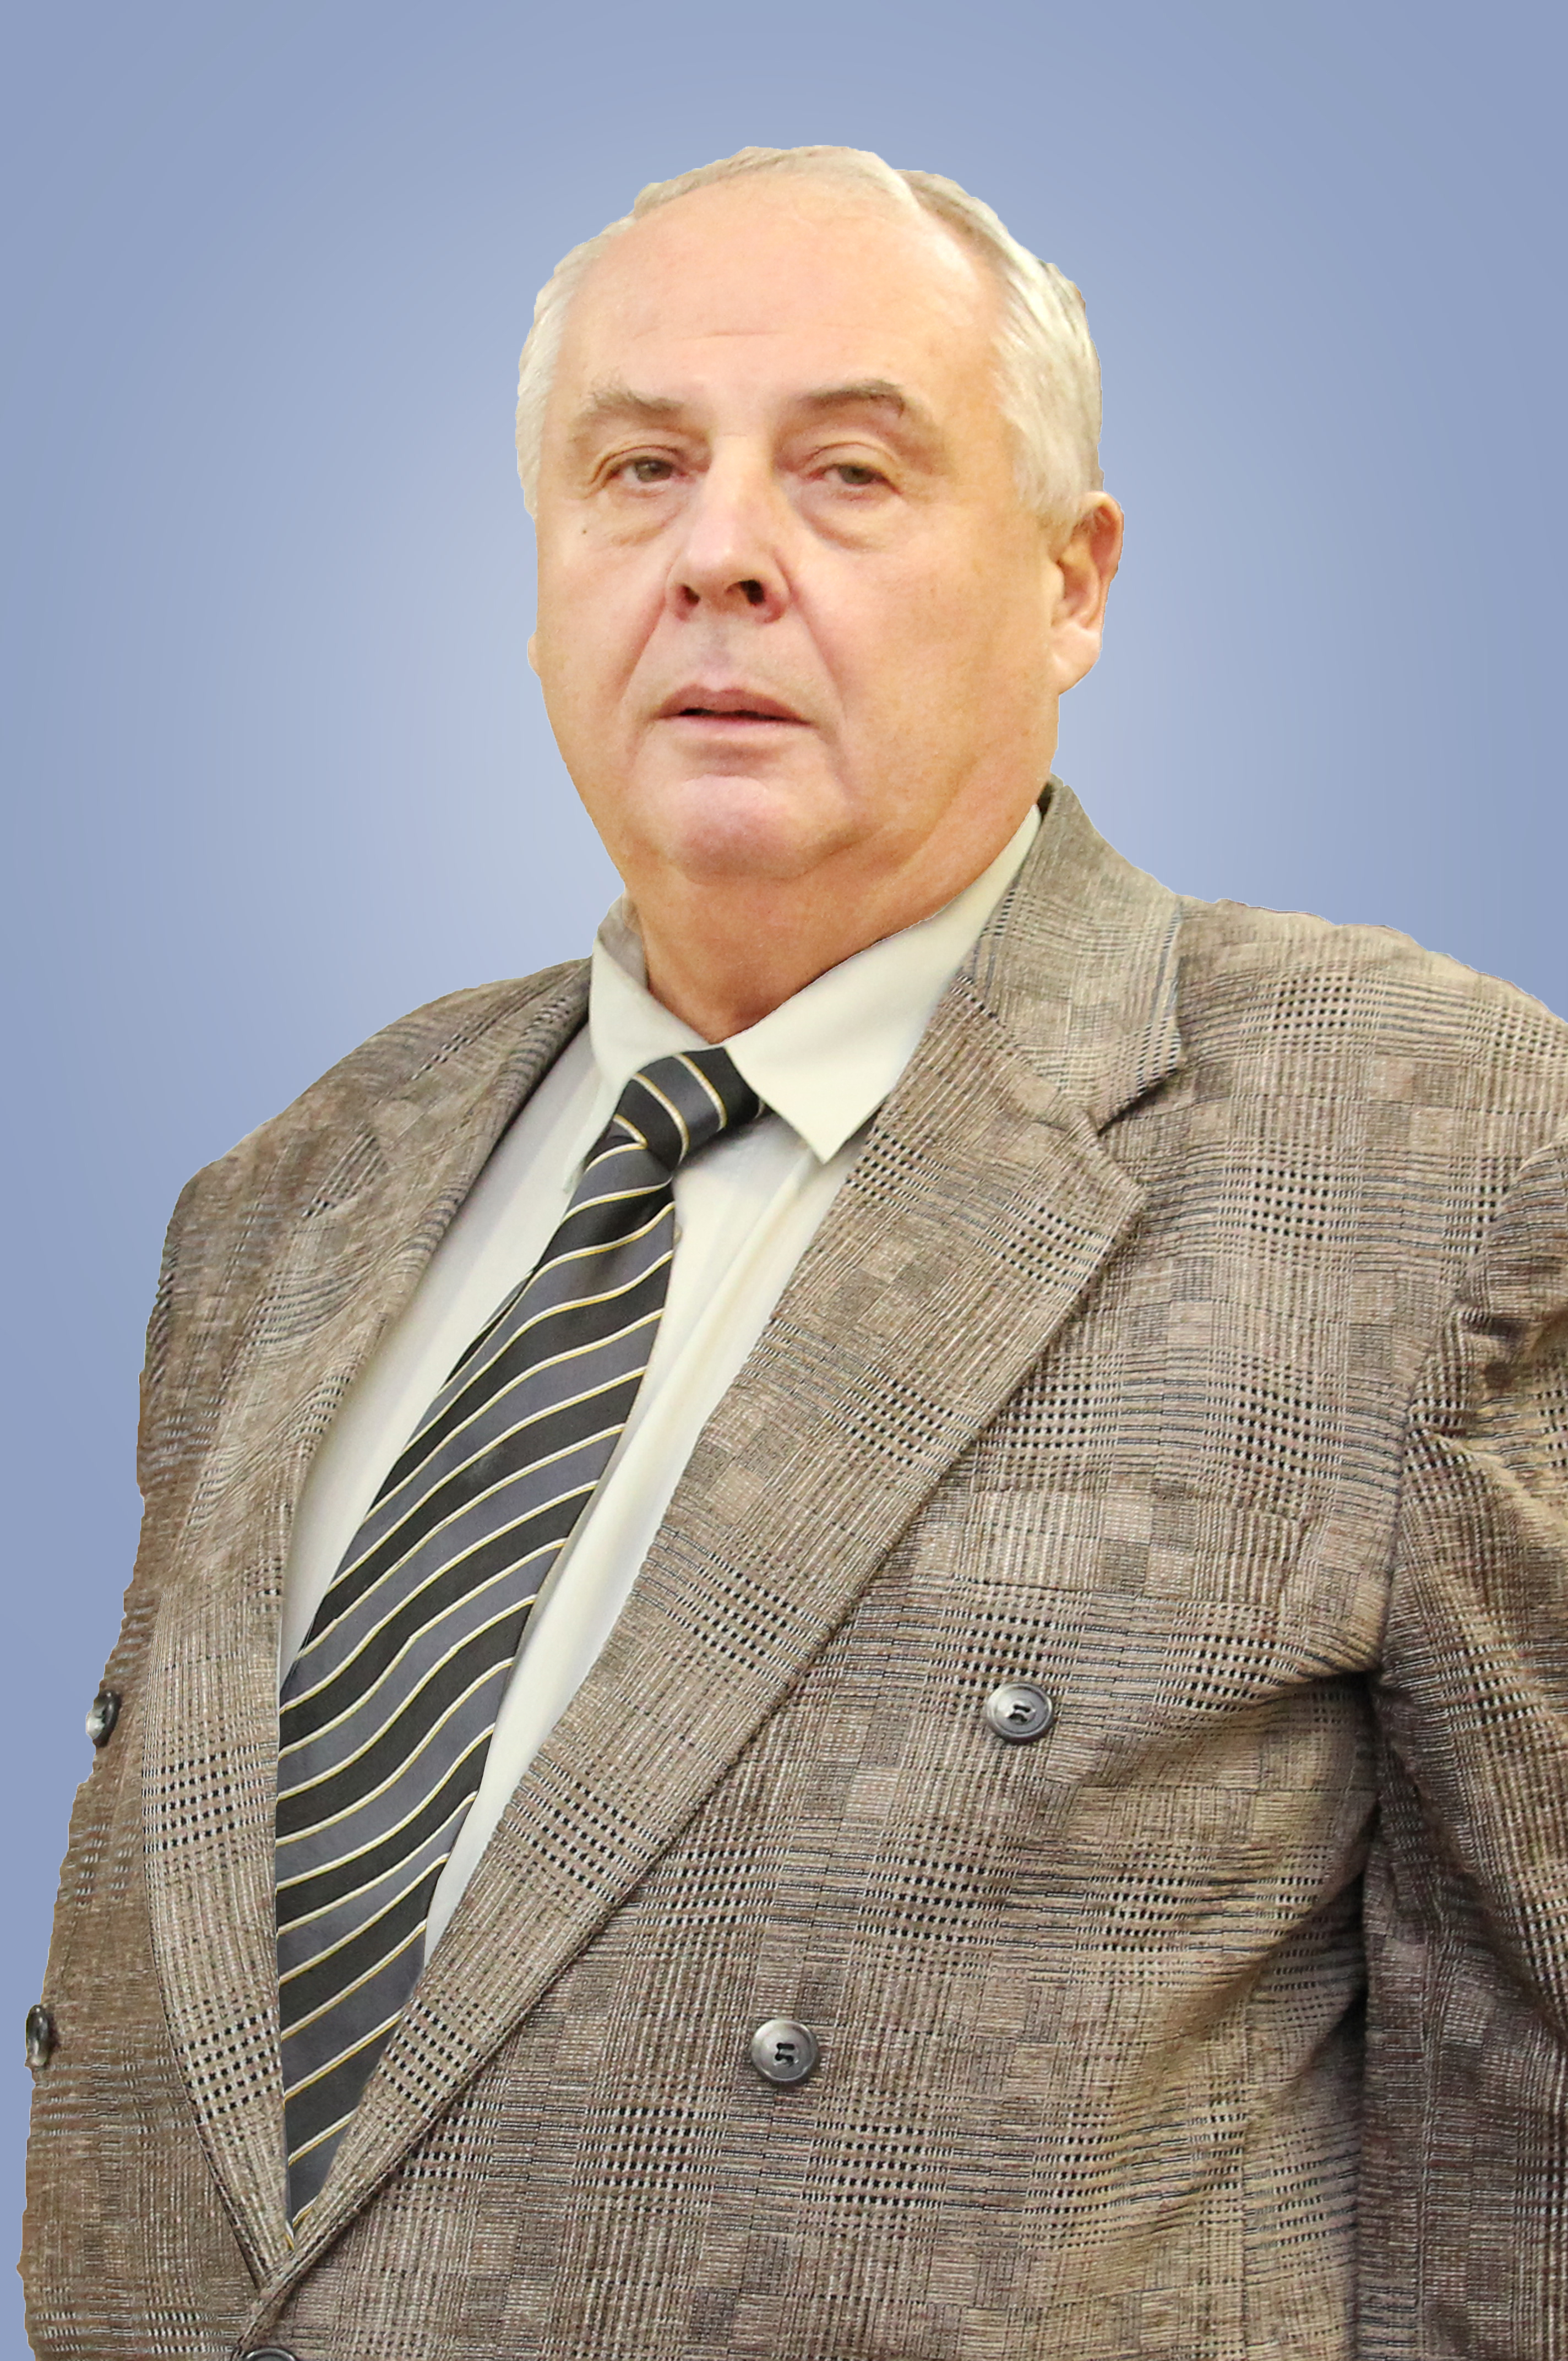                         Kazancev Sergey
            